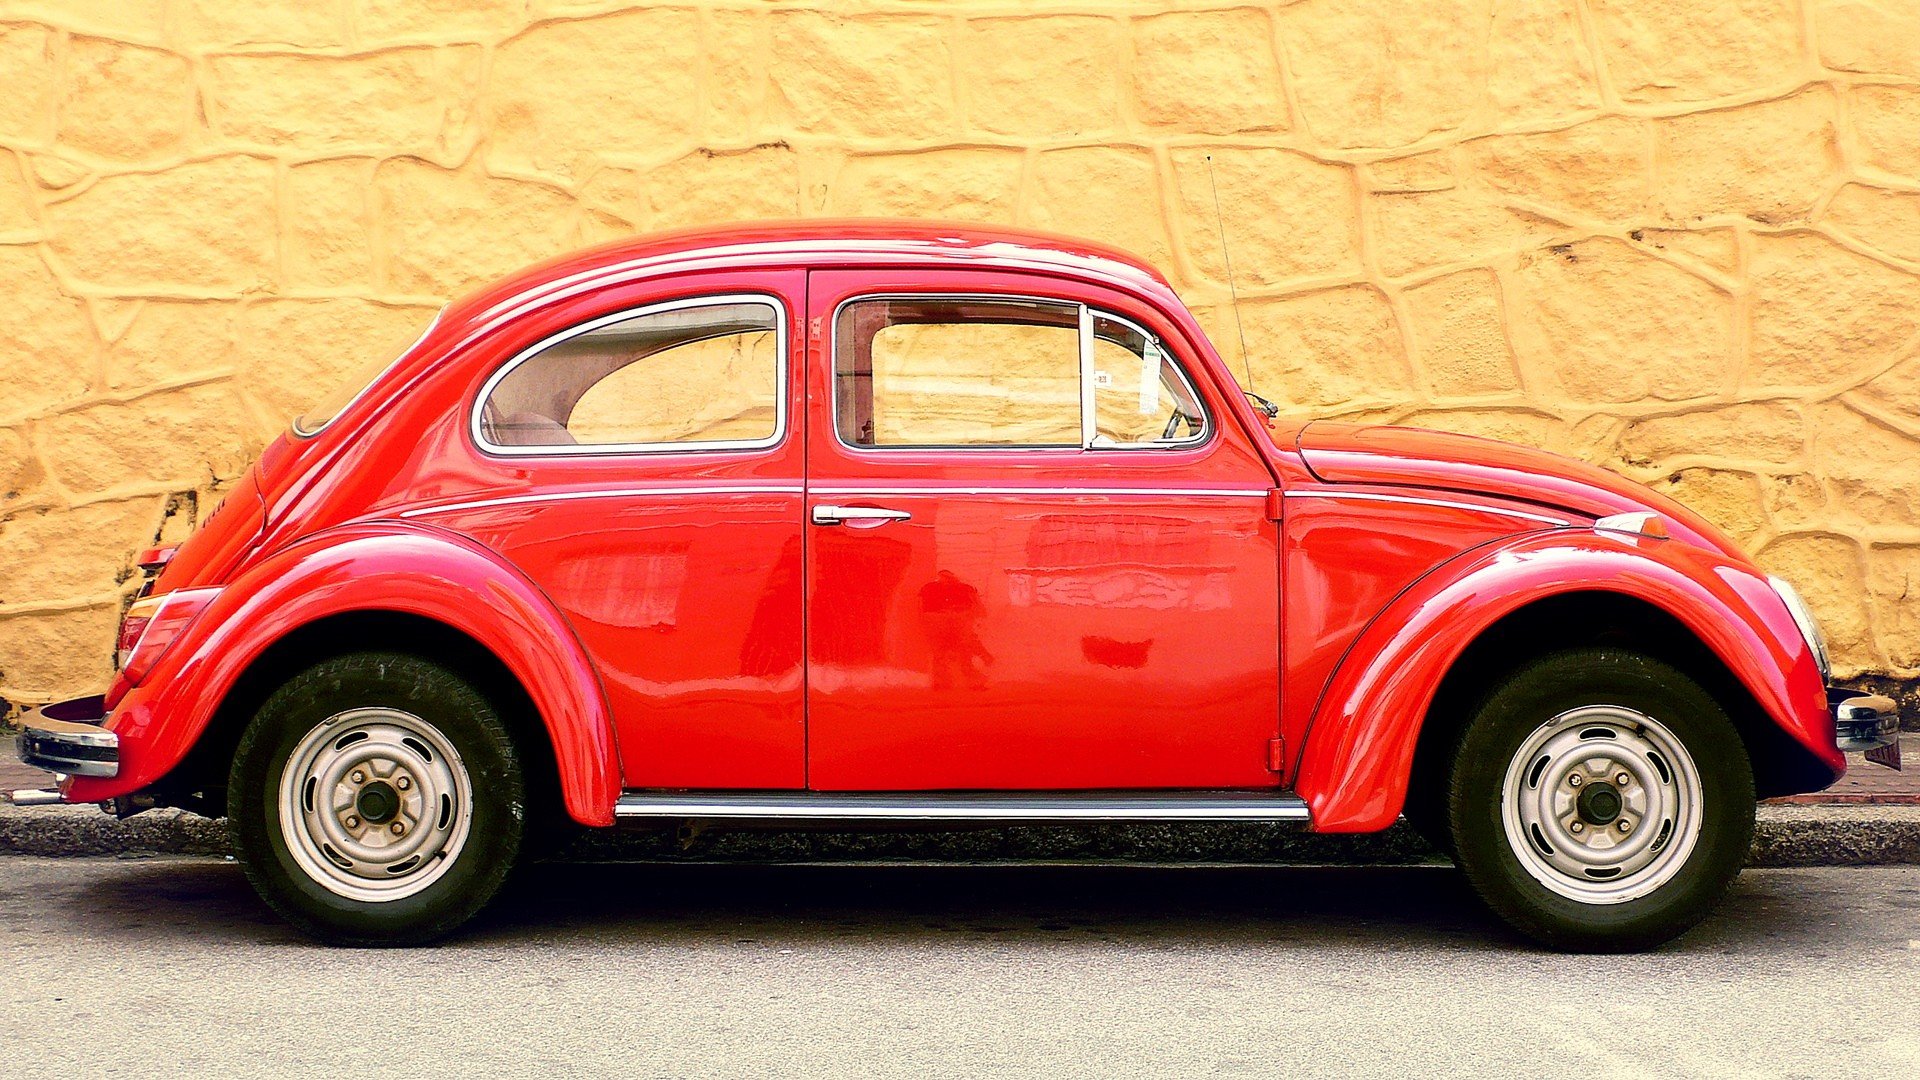 Download hd 1920x1080 Volkswagen Beetle desktop wallpaper ID:117161 for free